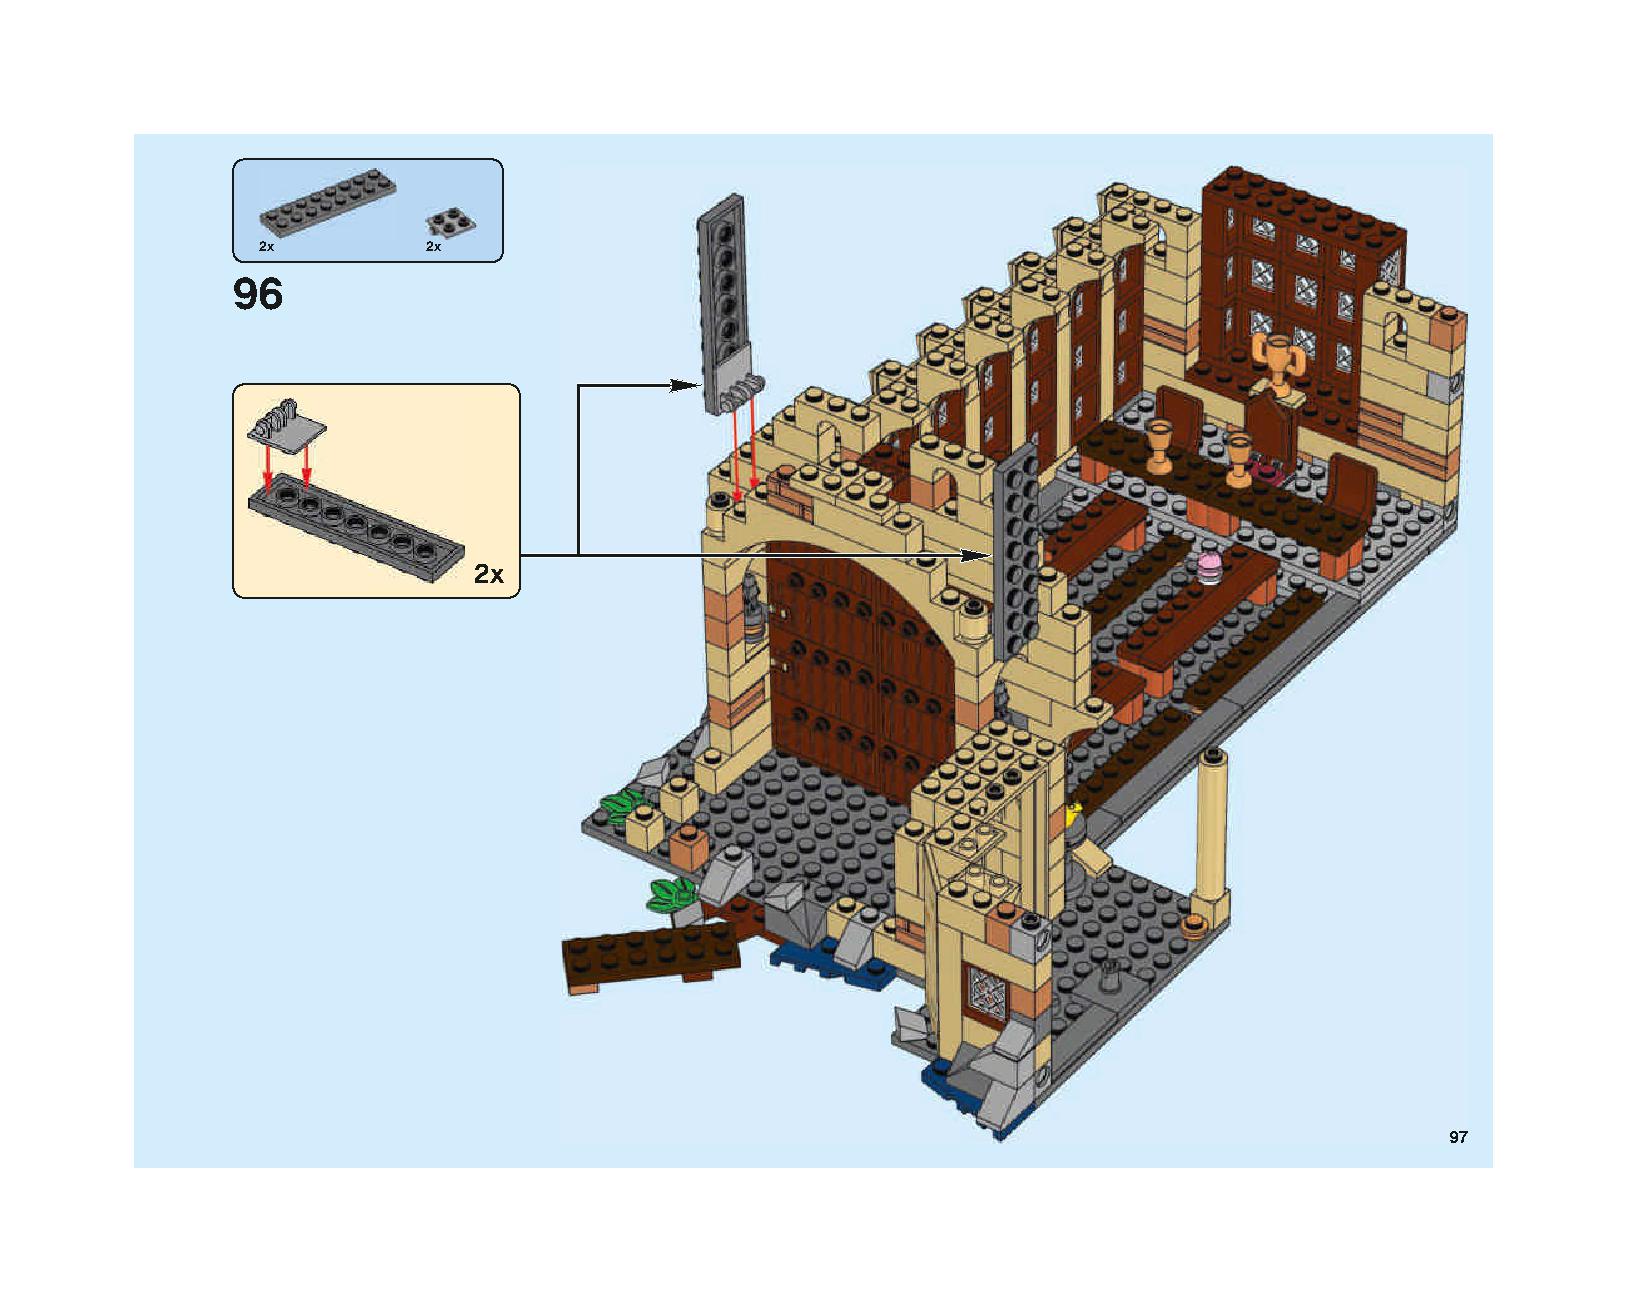 ホグワーツの大広間 75954 レゴの商品情報 レゴの説明書・組立方法 97 page